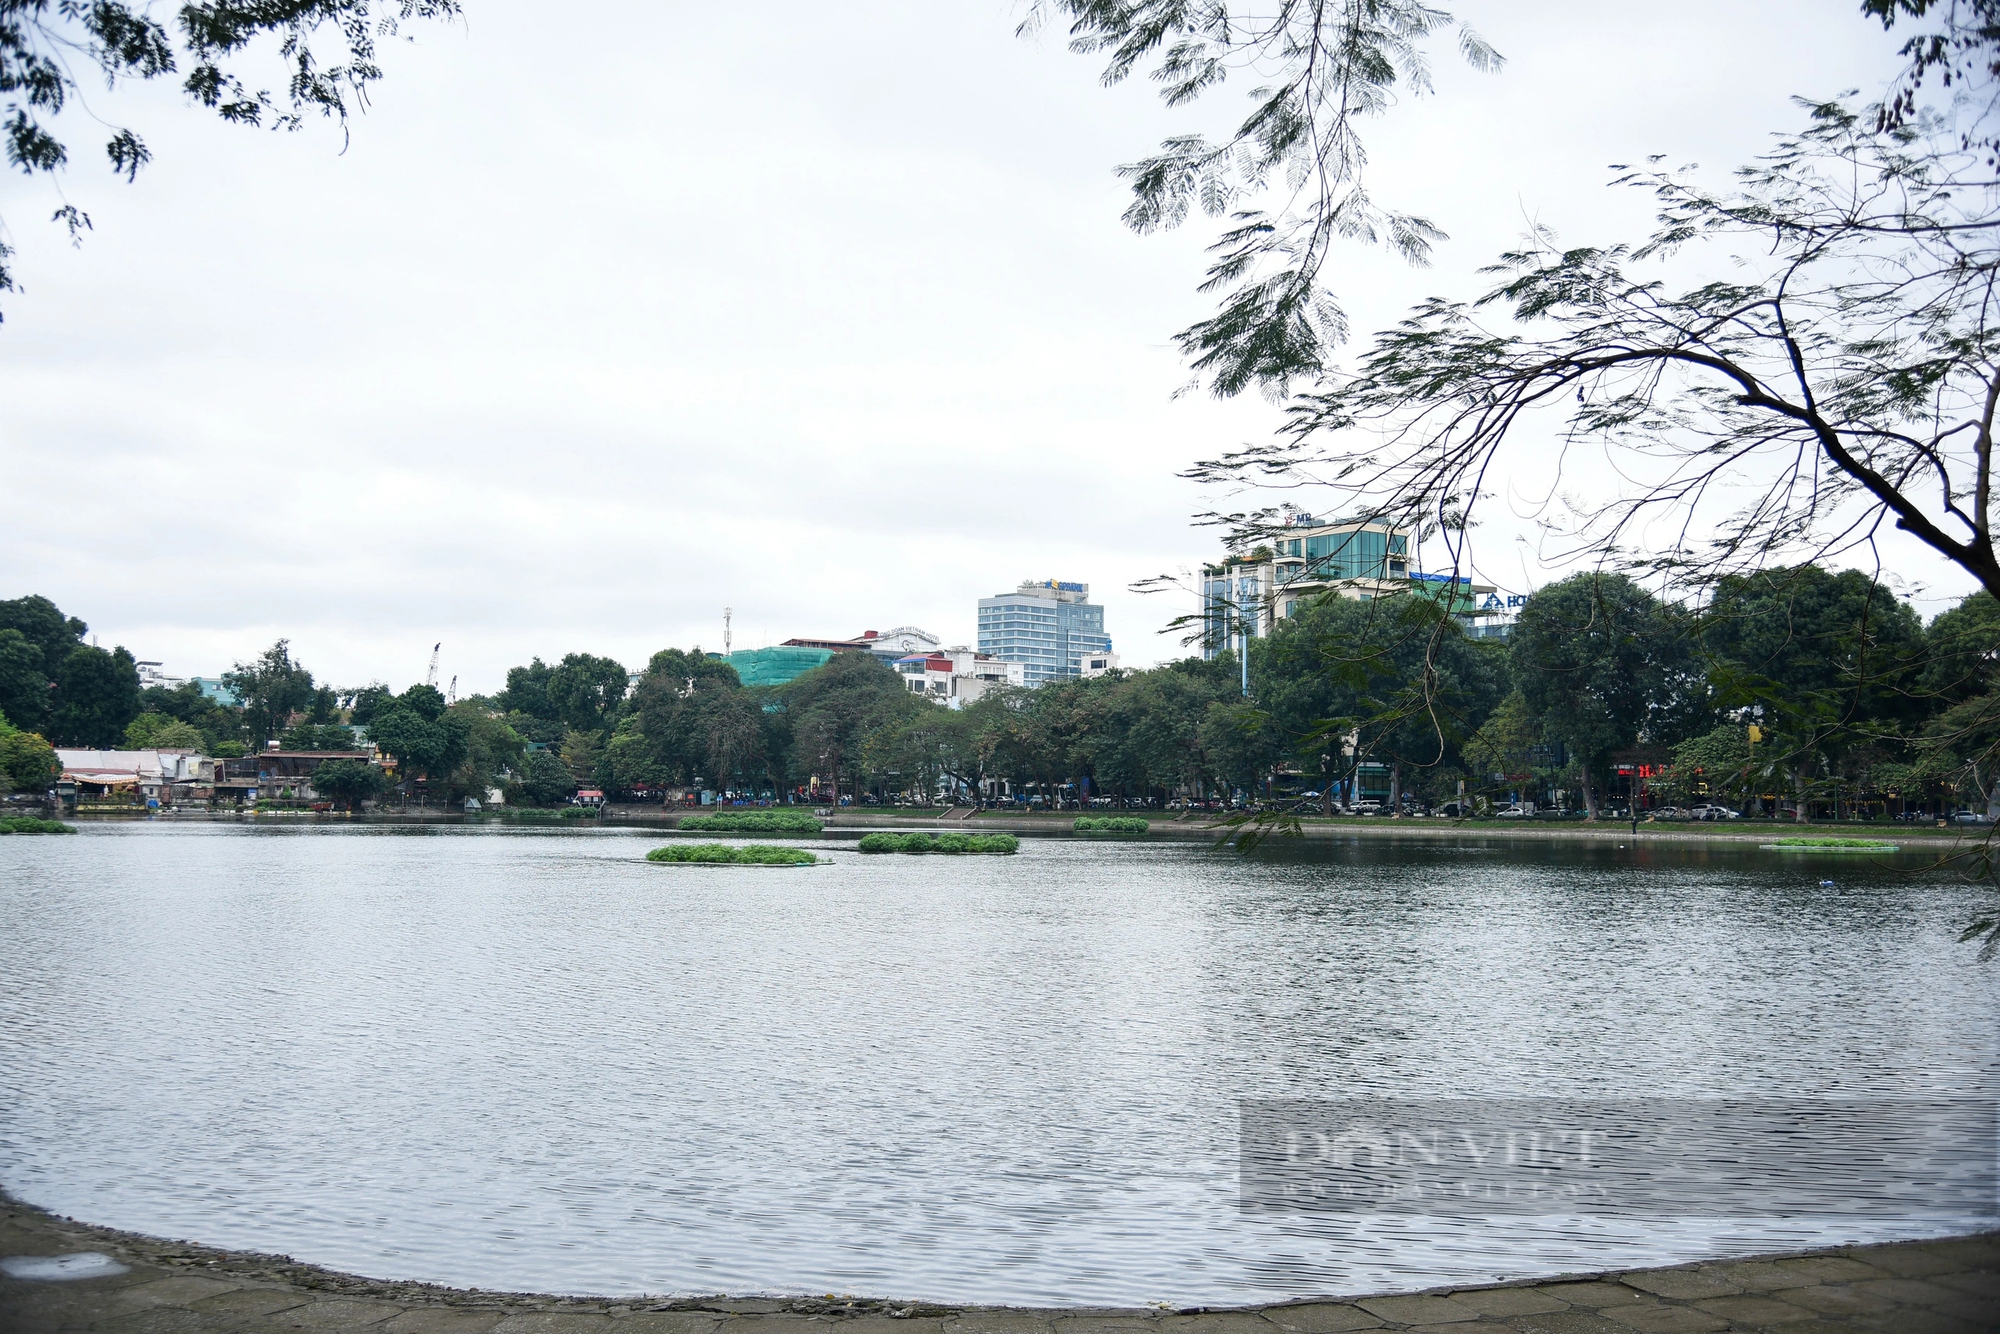 Hiện trạng khu vực hồ rộng gần 5 hec-ta được đề xuất xây 5 quảng trường ở Hà Nội- Ảnh 1.